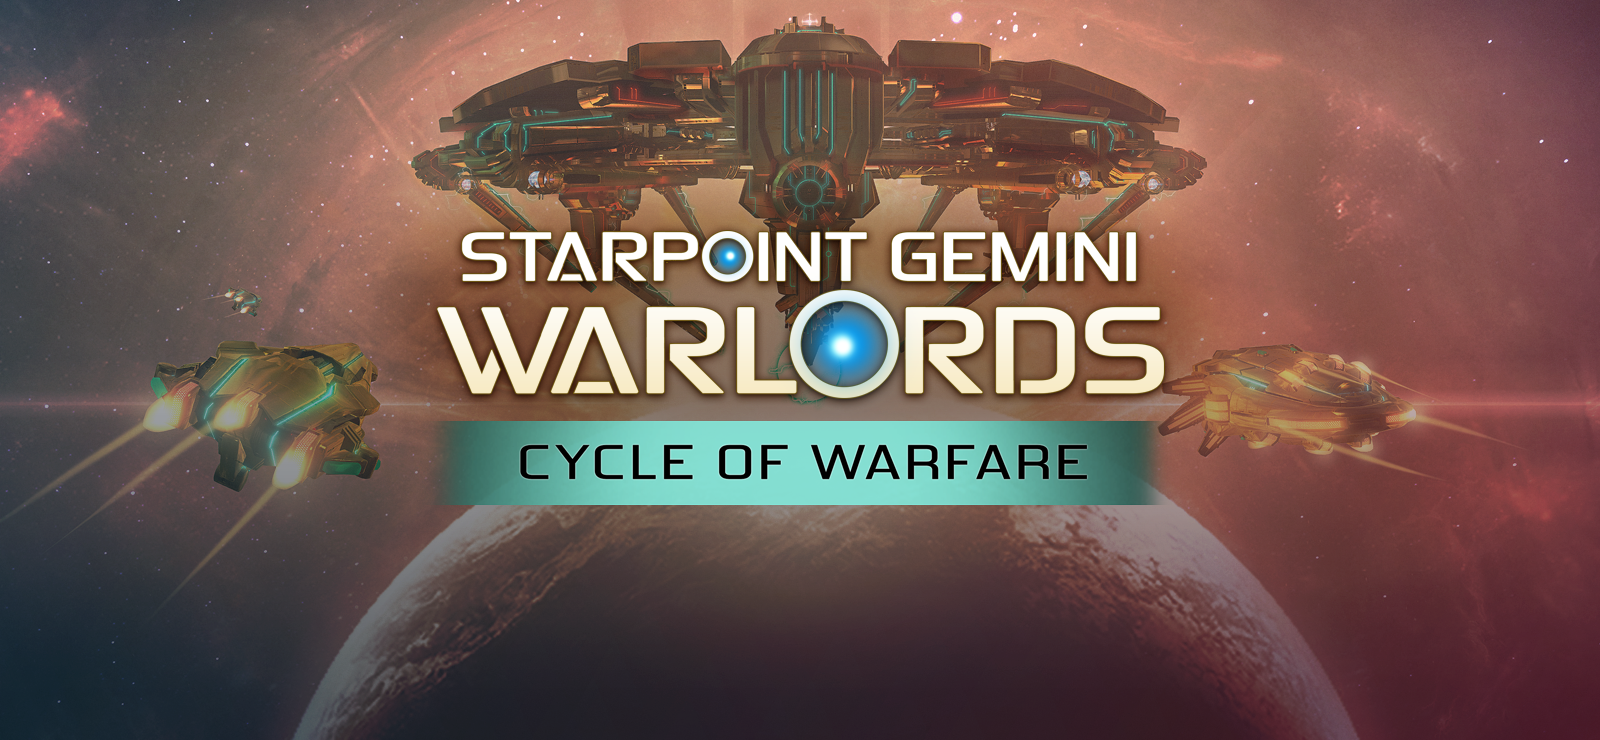 Starpoint Gemini Warlords - Cycle Of Warfare